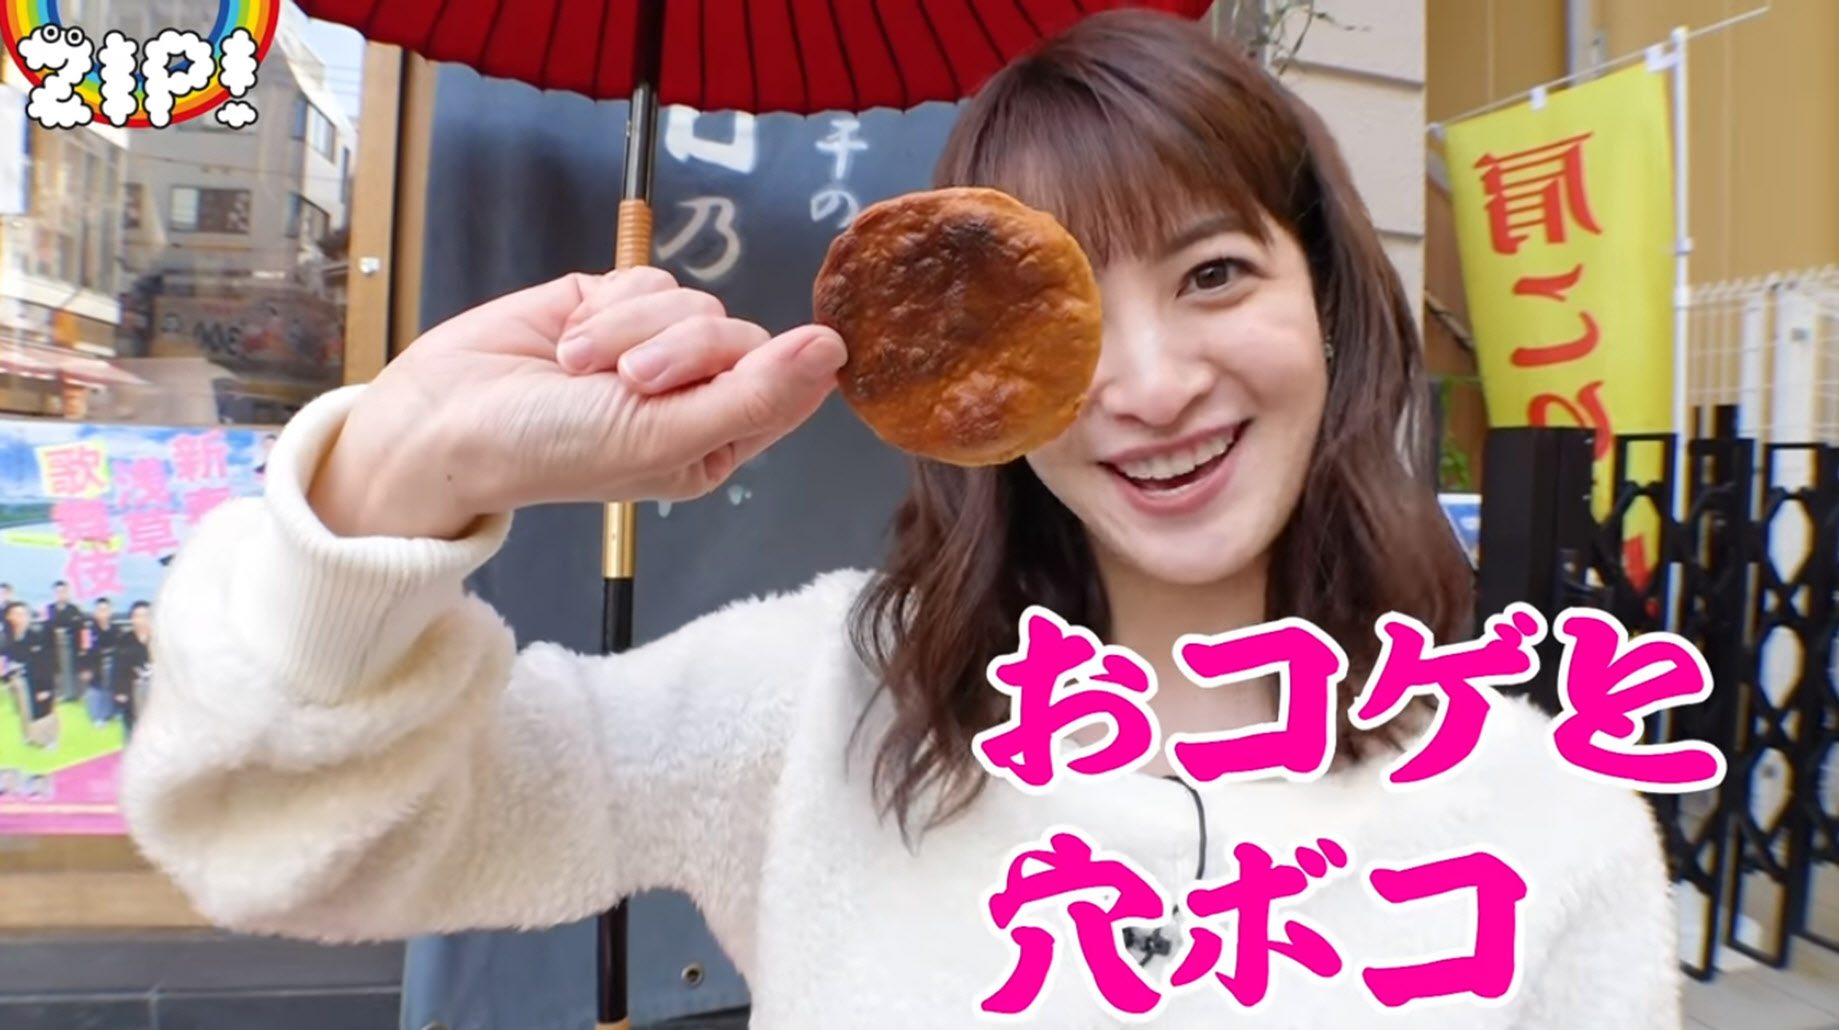 Senbei-Eating-Report-by-Arisa-Ushiro-後呂有紗-NTV-ZIP-2018-06.jpg